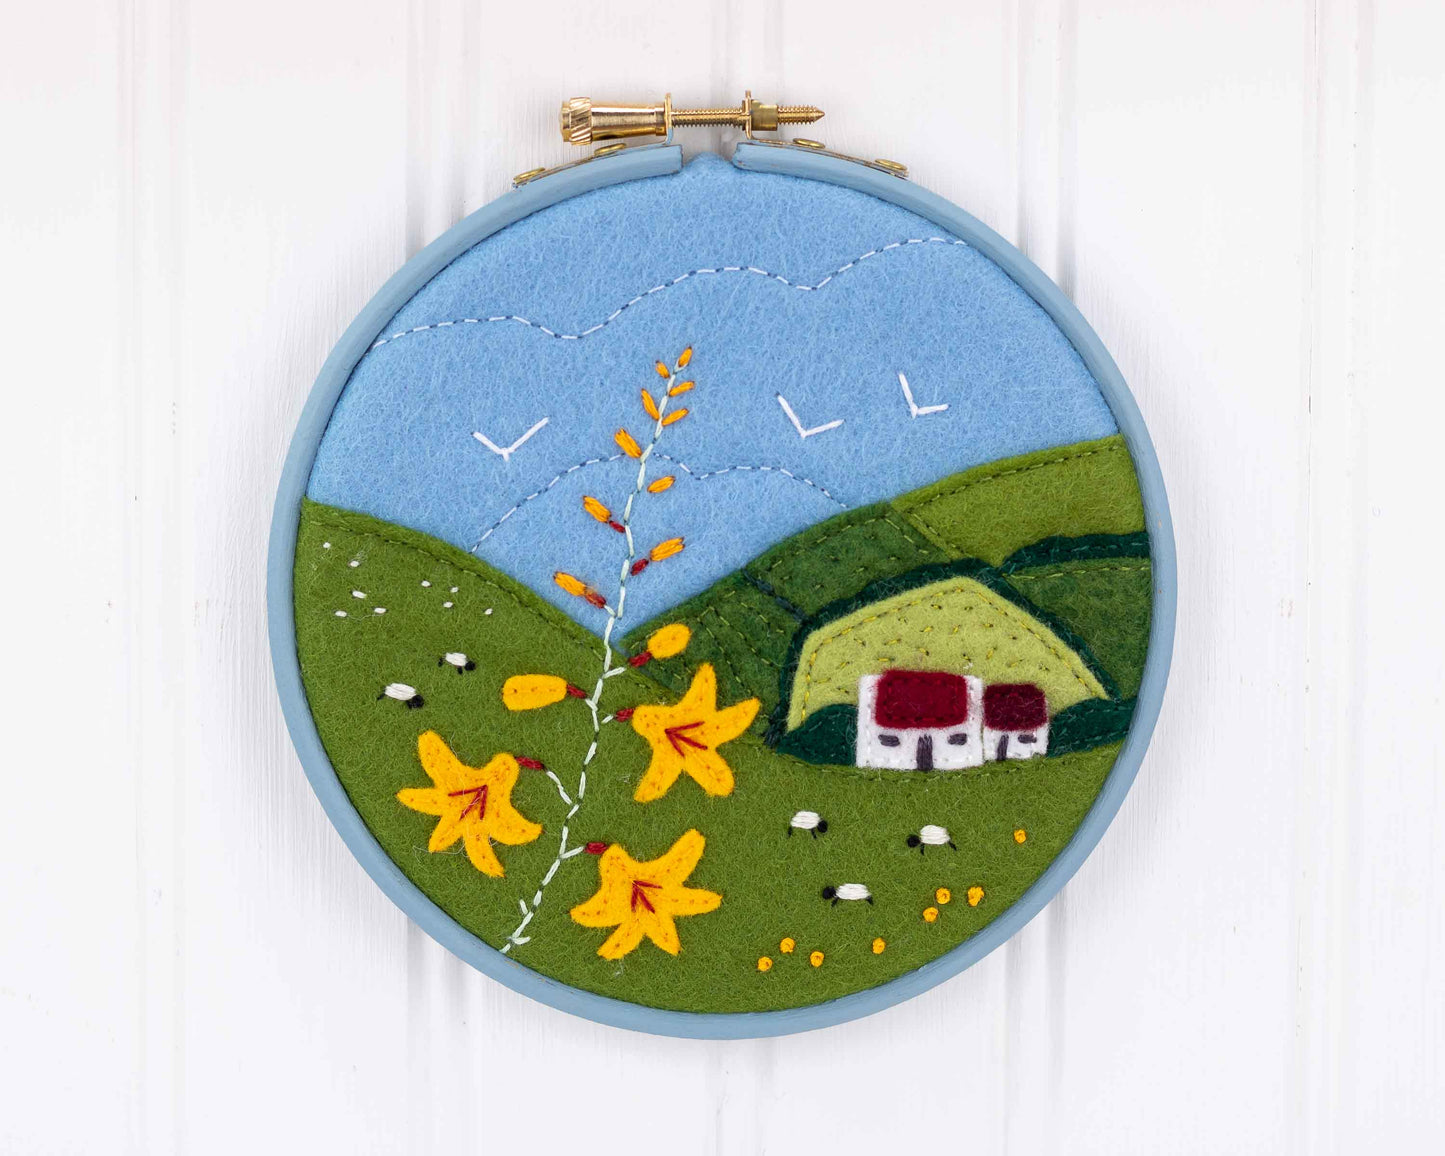 Irish cottage felt landscape embroidery